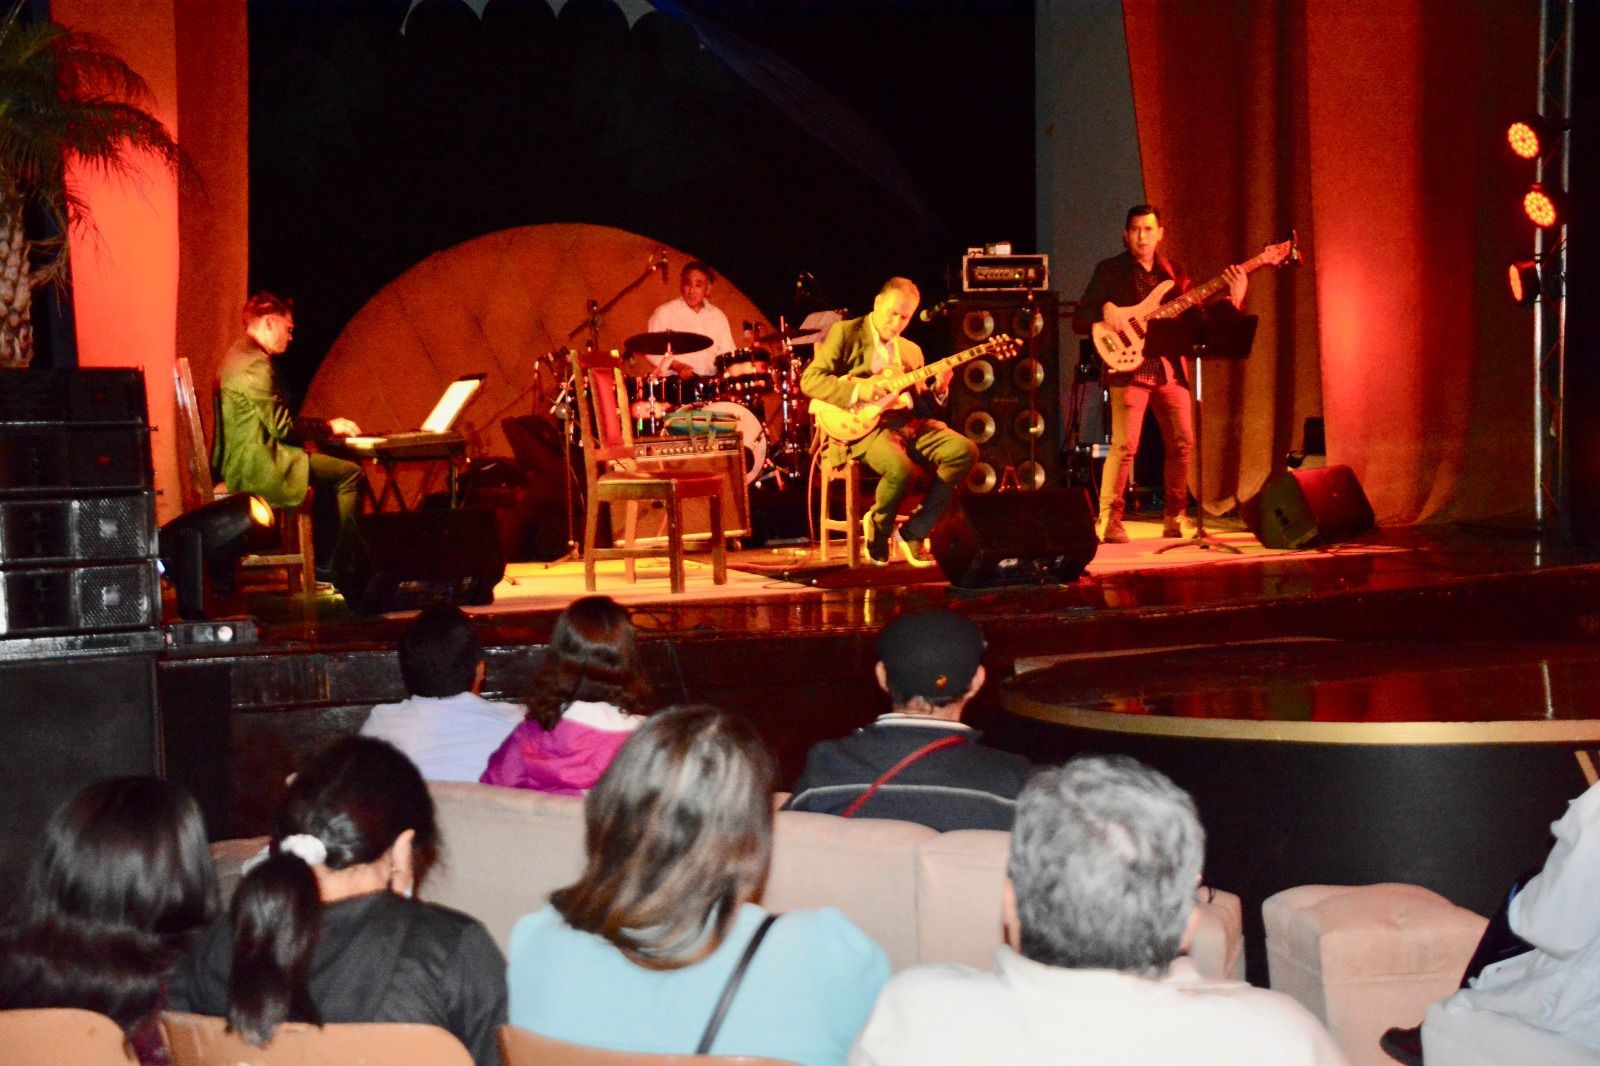 El músico, arreglista y compositor, Cris Lobo y Quartet Jazz compartieron escenario para el disfrute de la población potosina y visitantes.